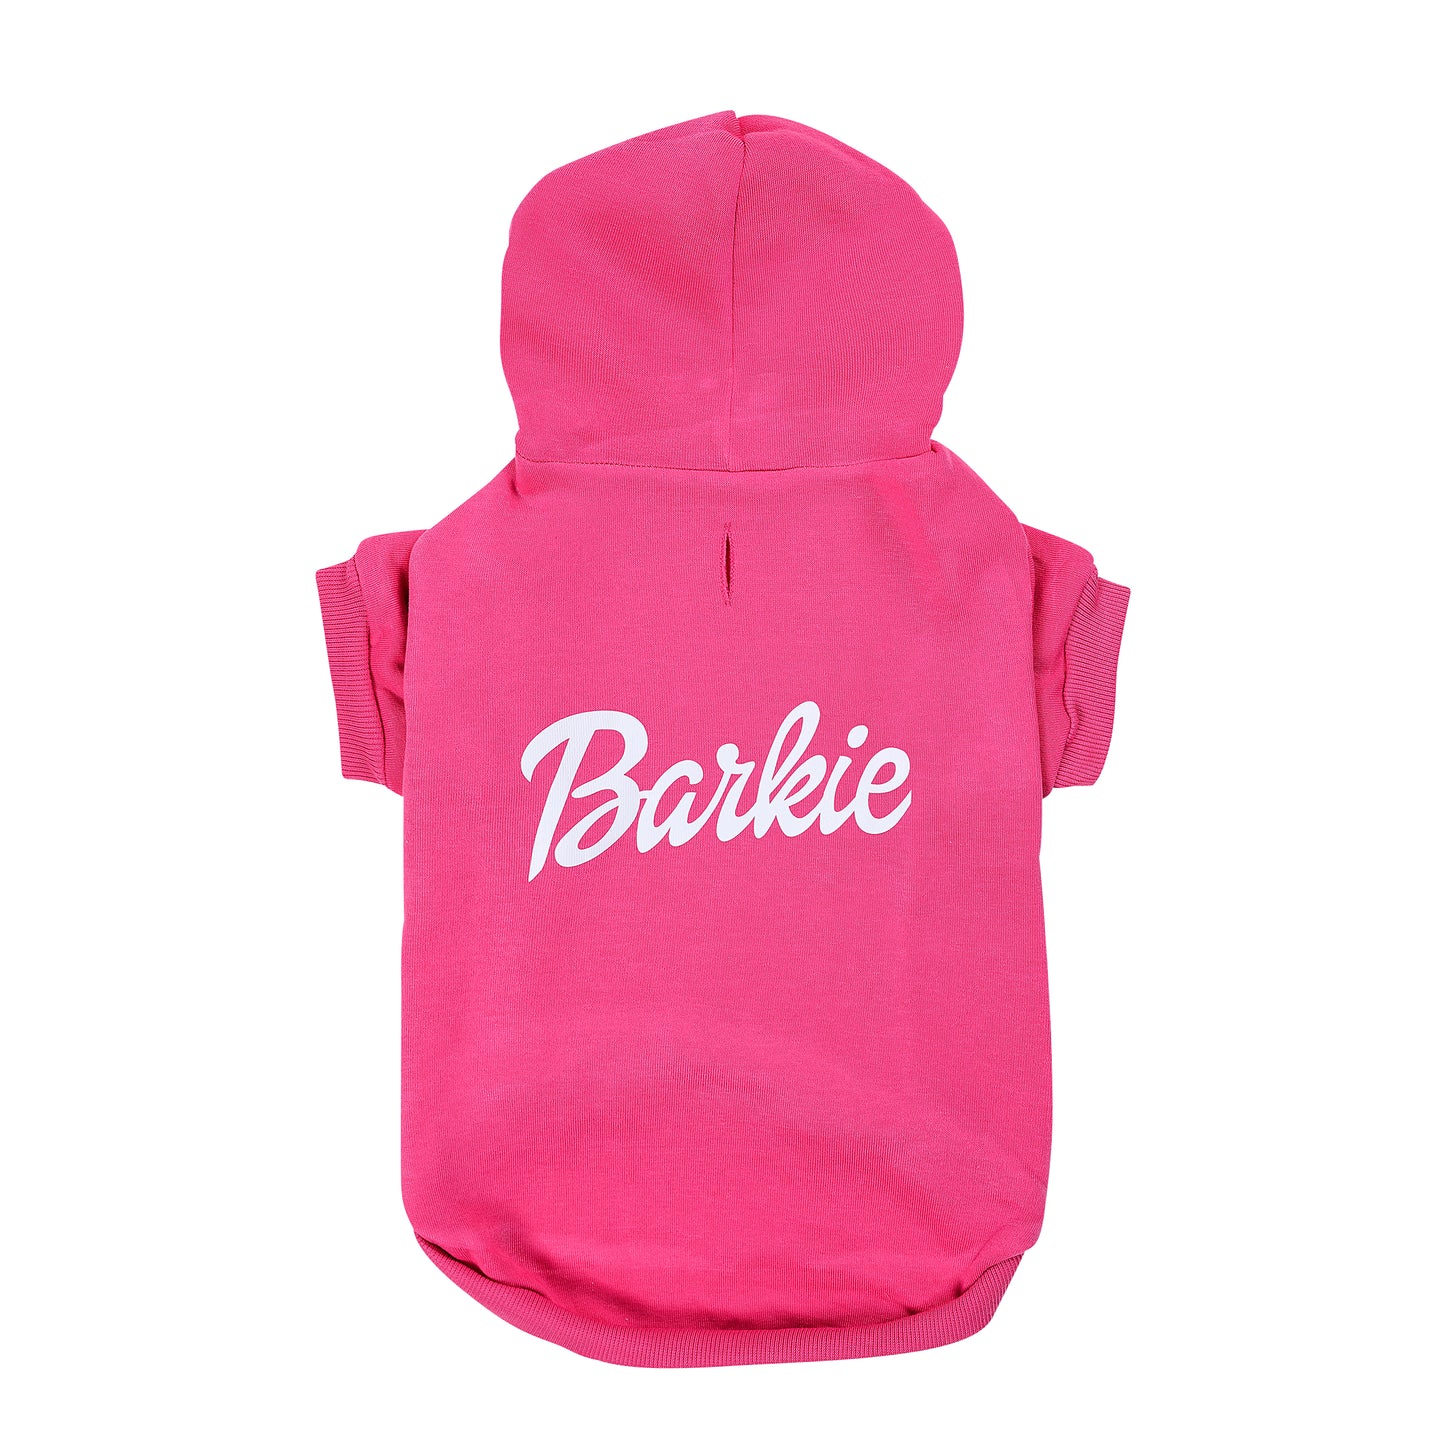 Barkie Pink Hoodie